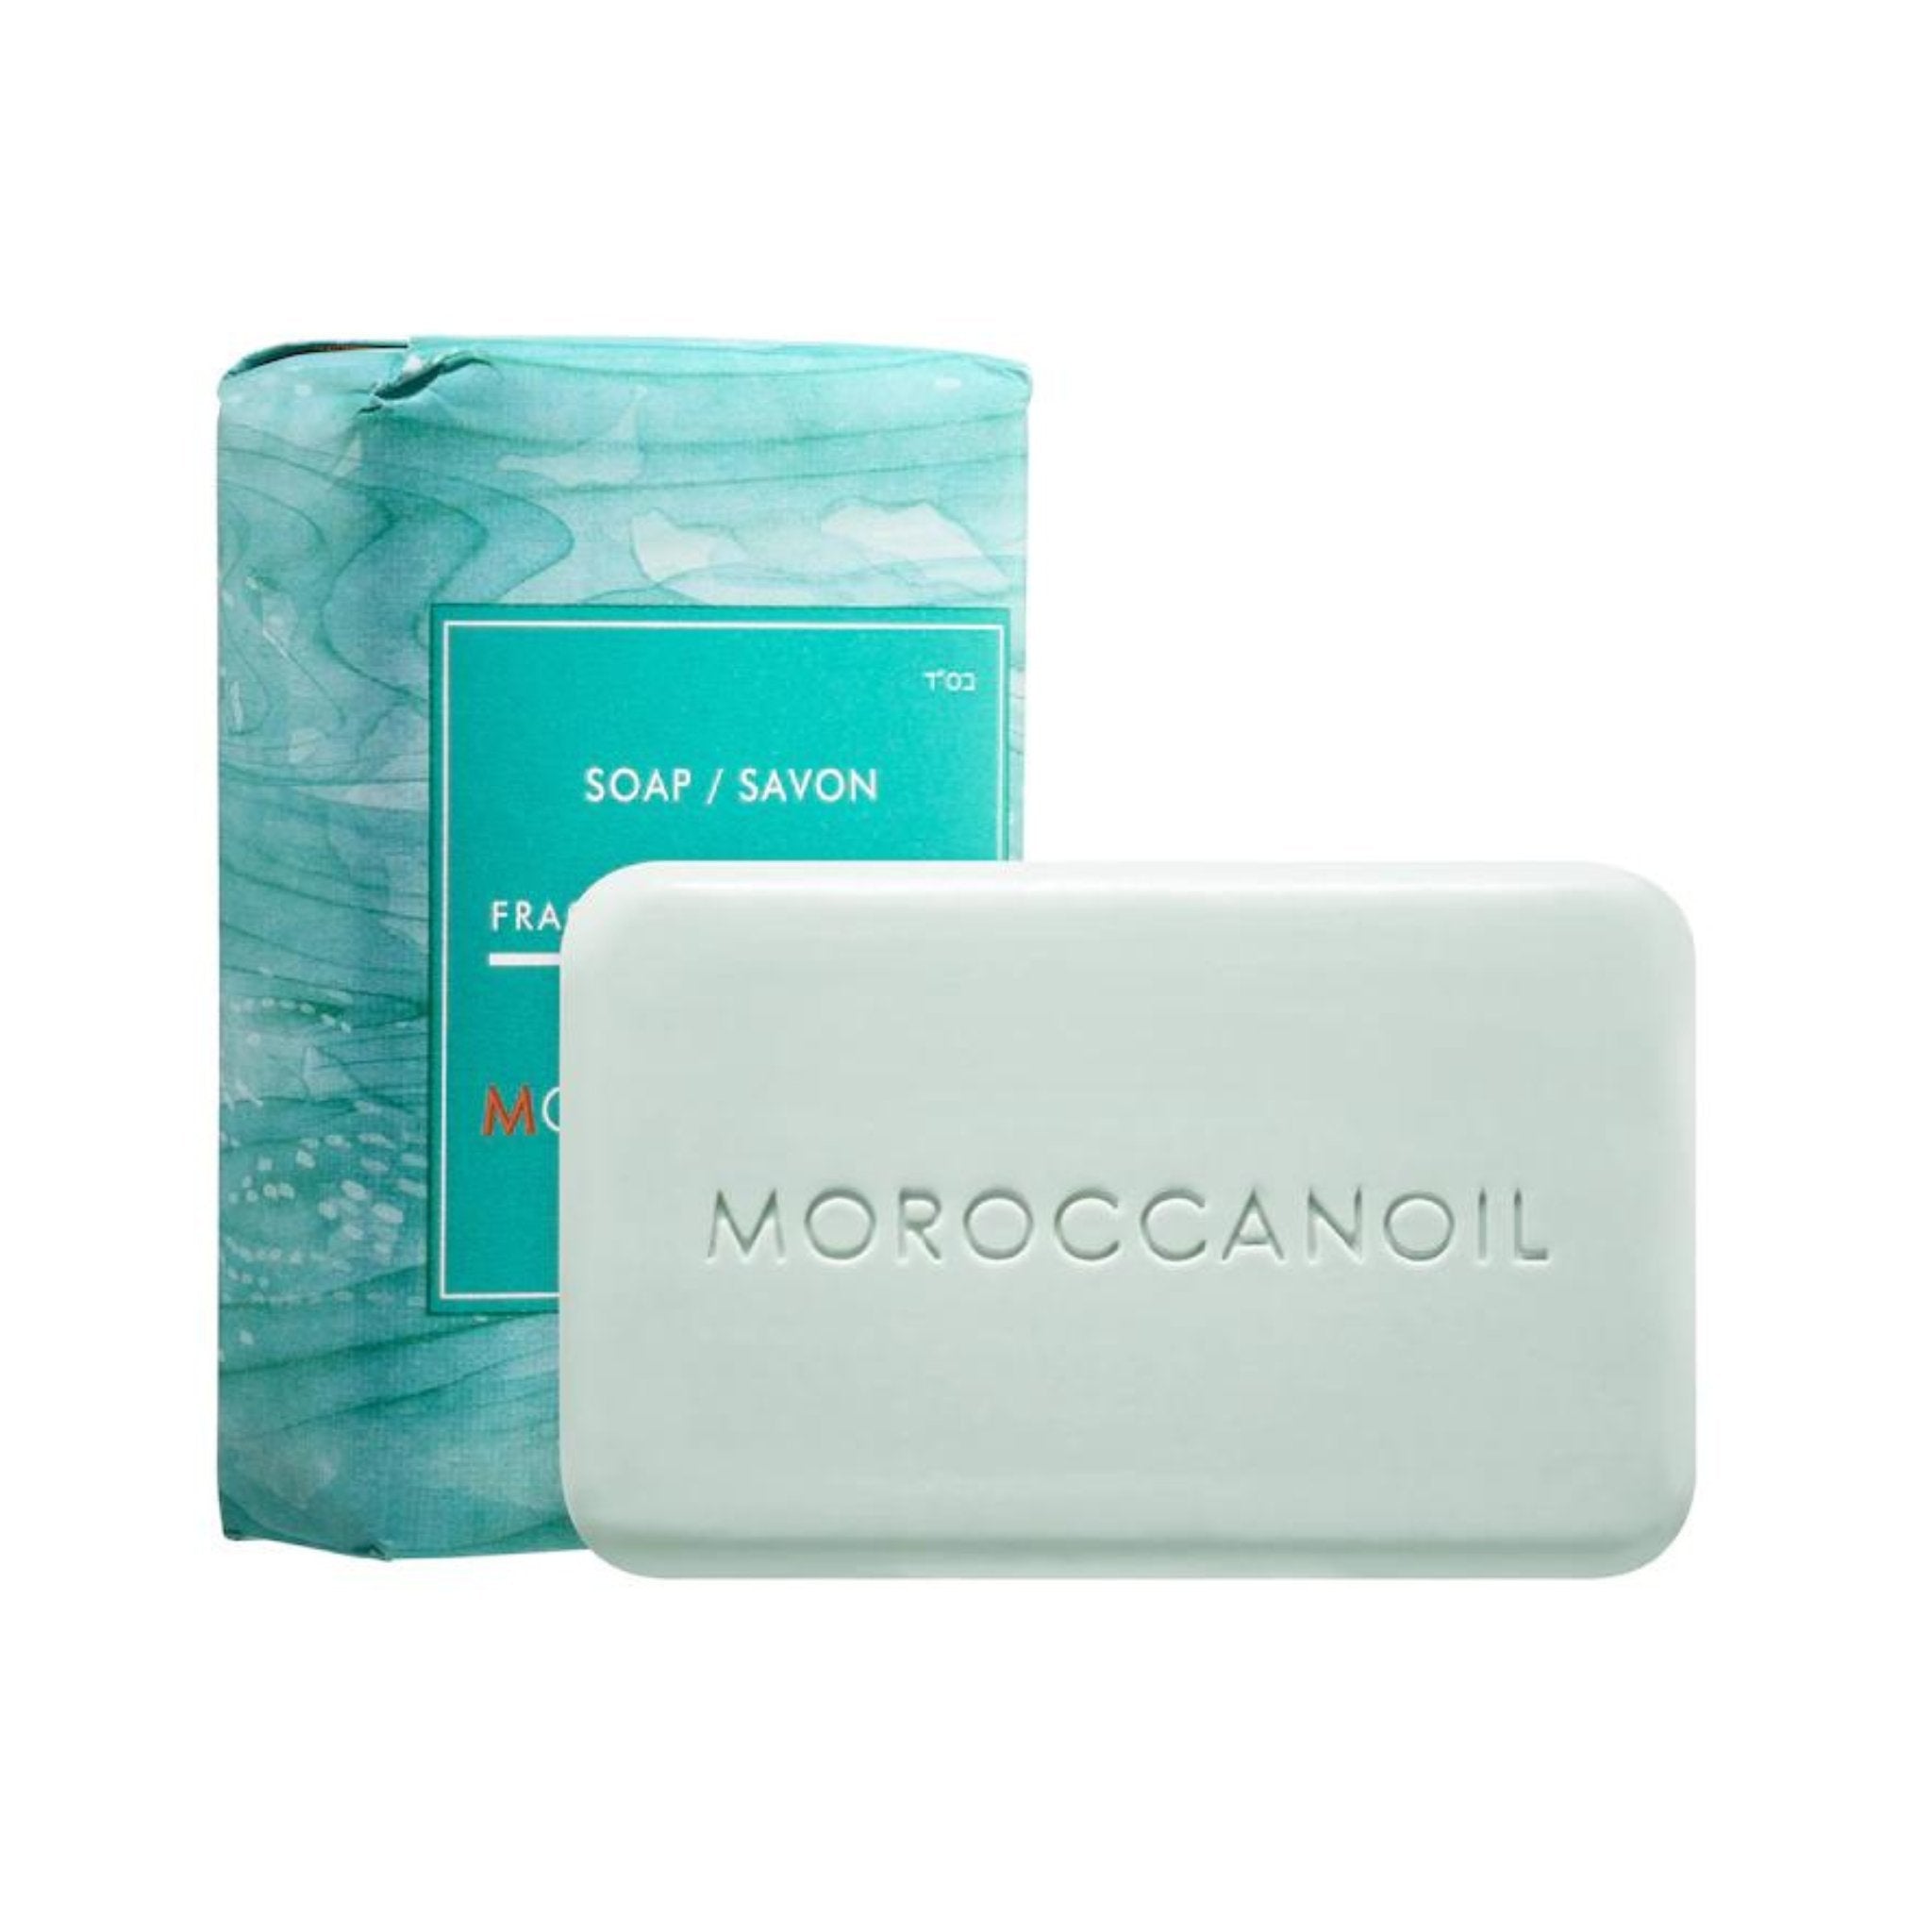 Moroccanoil. Barre de Savon Fragrance Originale - 200 g - Concept C. Shop